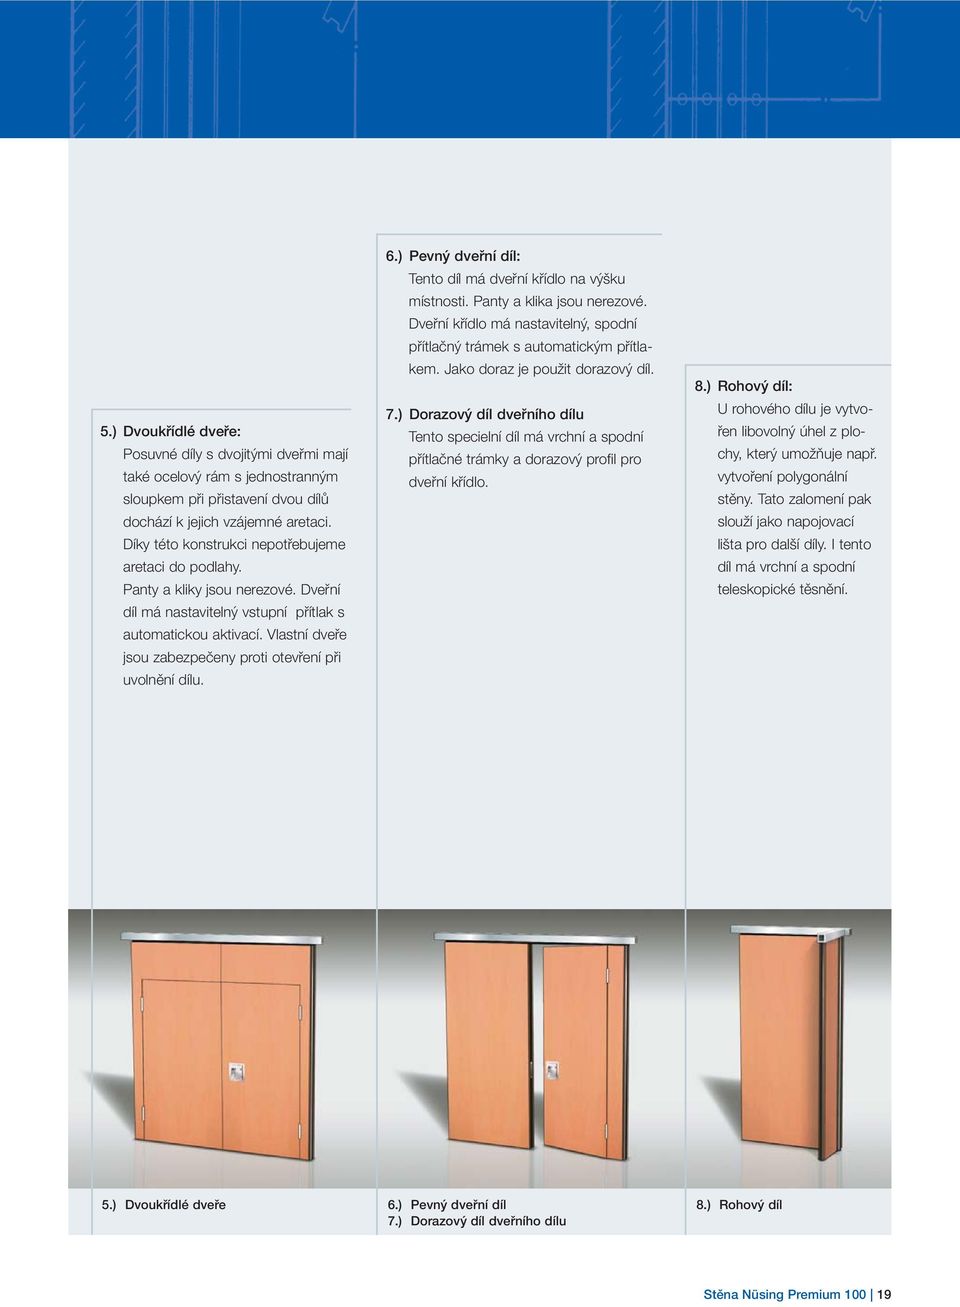 Vlastní dveře jsou zabezpečeny proti otevření při uvolnění dílu. 6.) Pevný dveřní díl: Tento díl má dveřní křídlo na výšku místnosti. Panty a klika jsou nerezové.